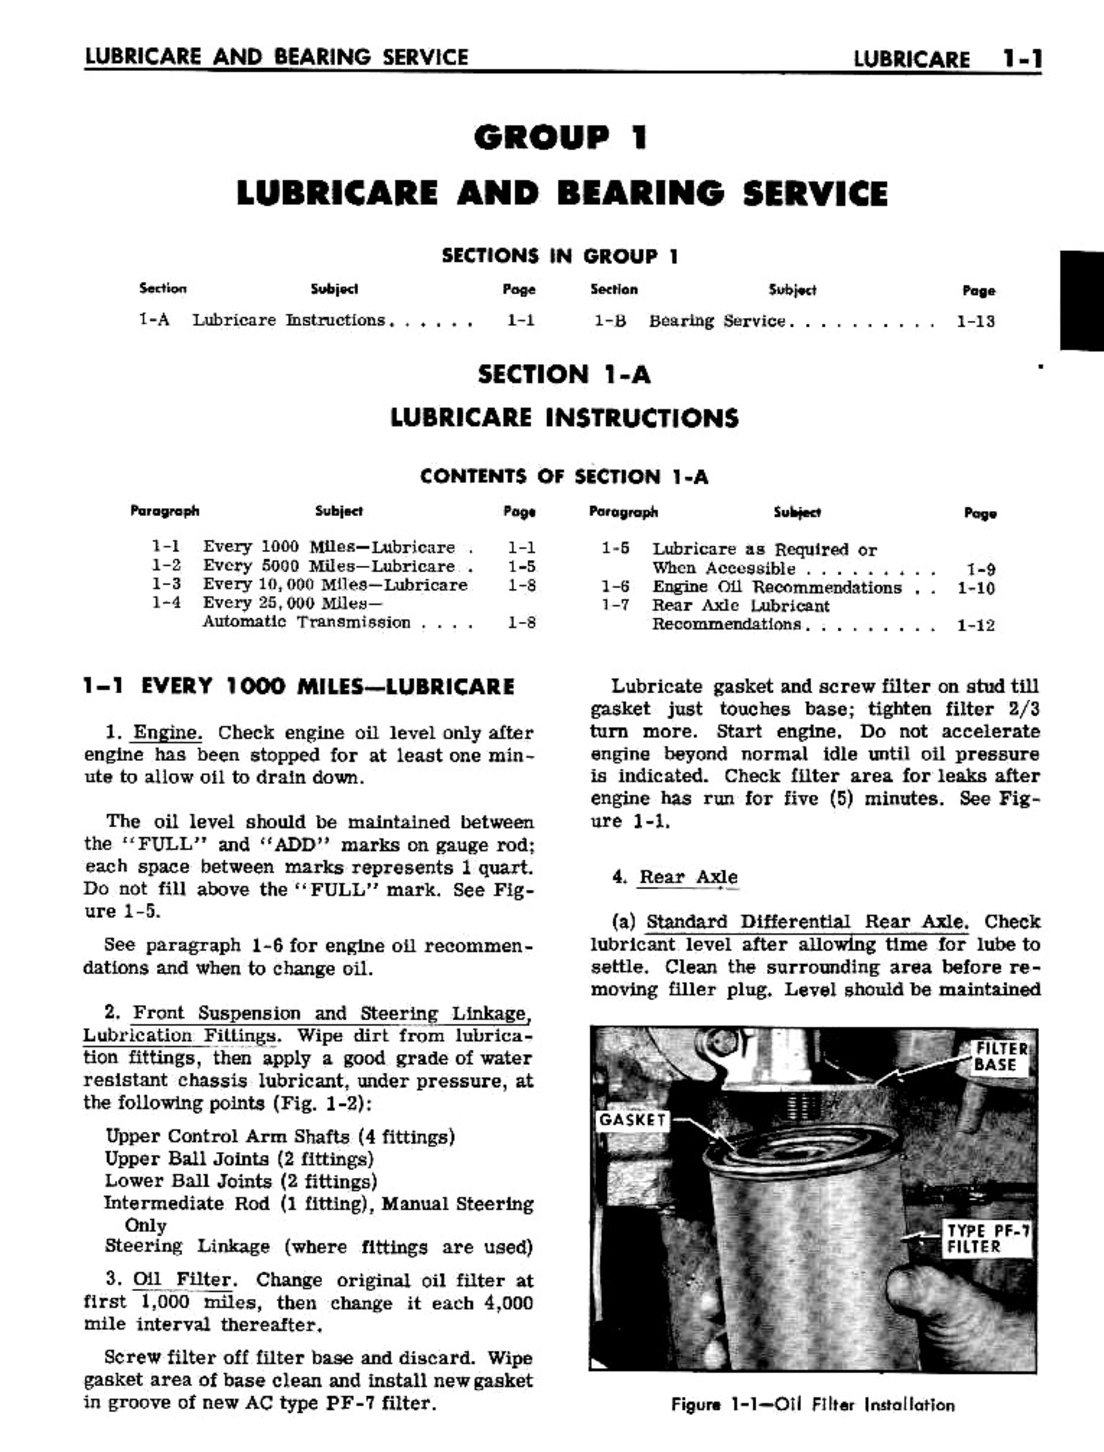 n_02 1961 Buick Shop Manual - Lubricare-001-001.jpg